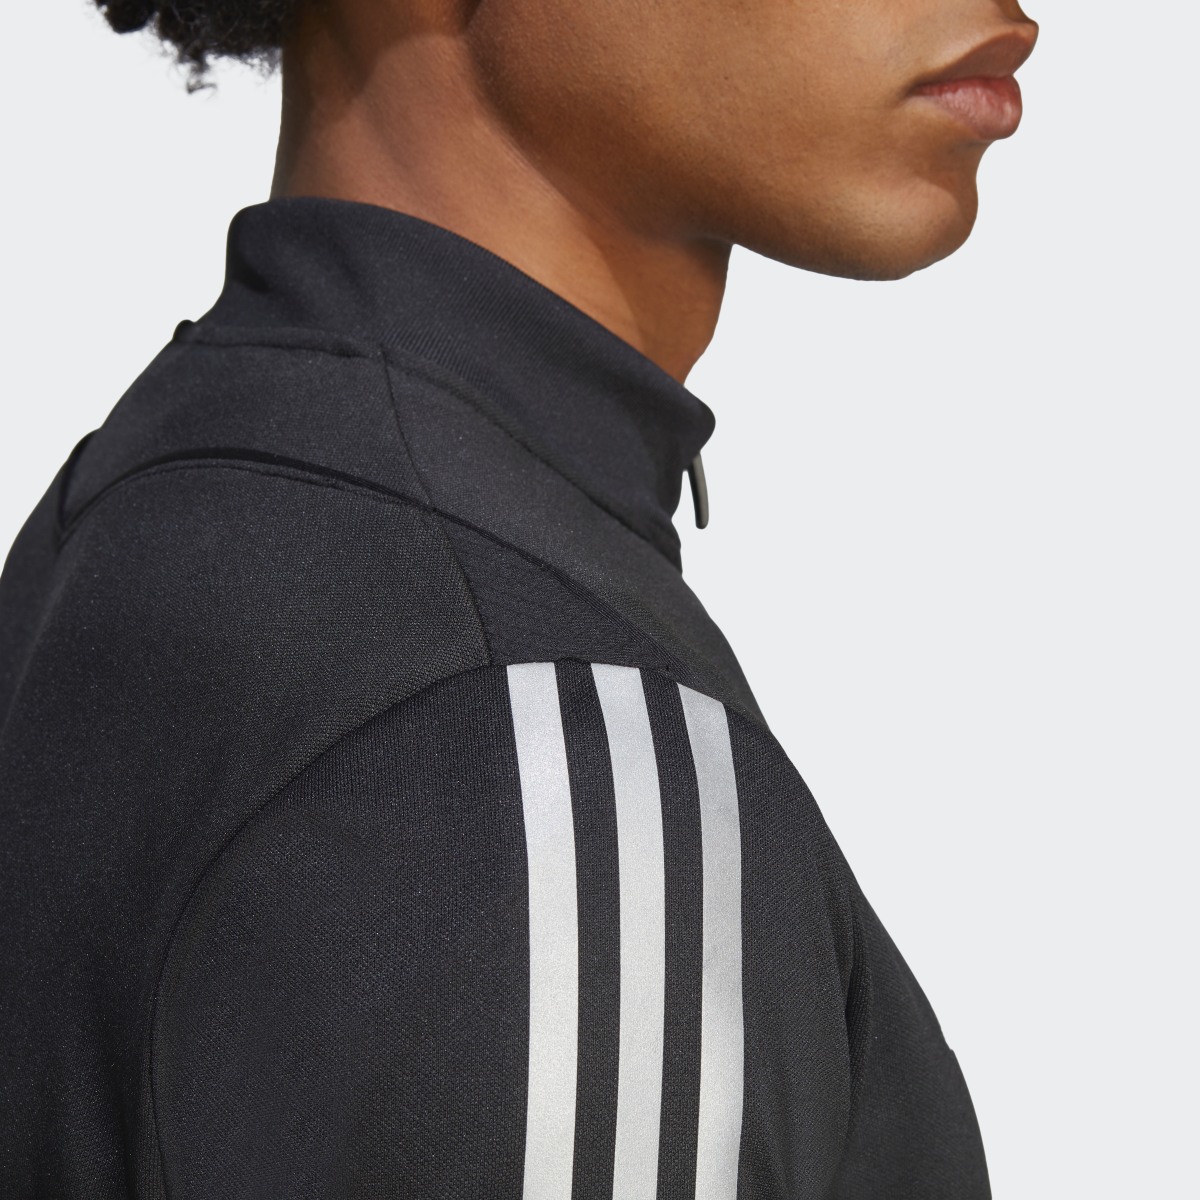 Adidas Tiro Reflective Training Jacket. 7